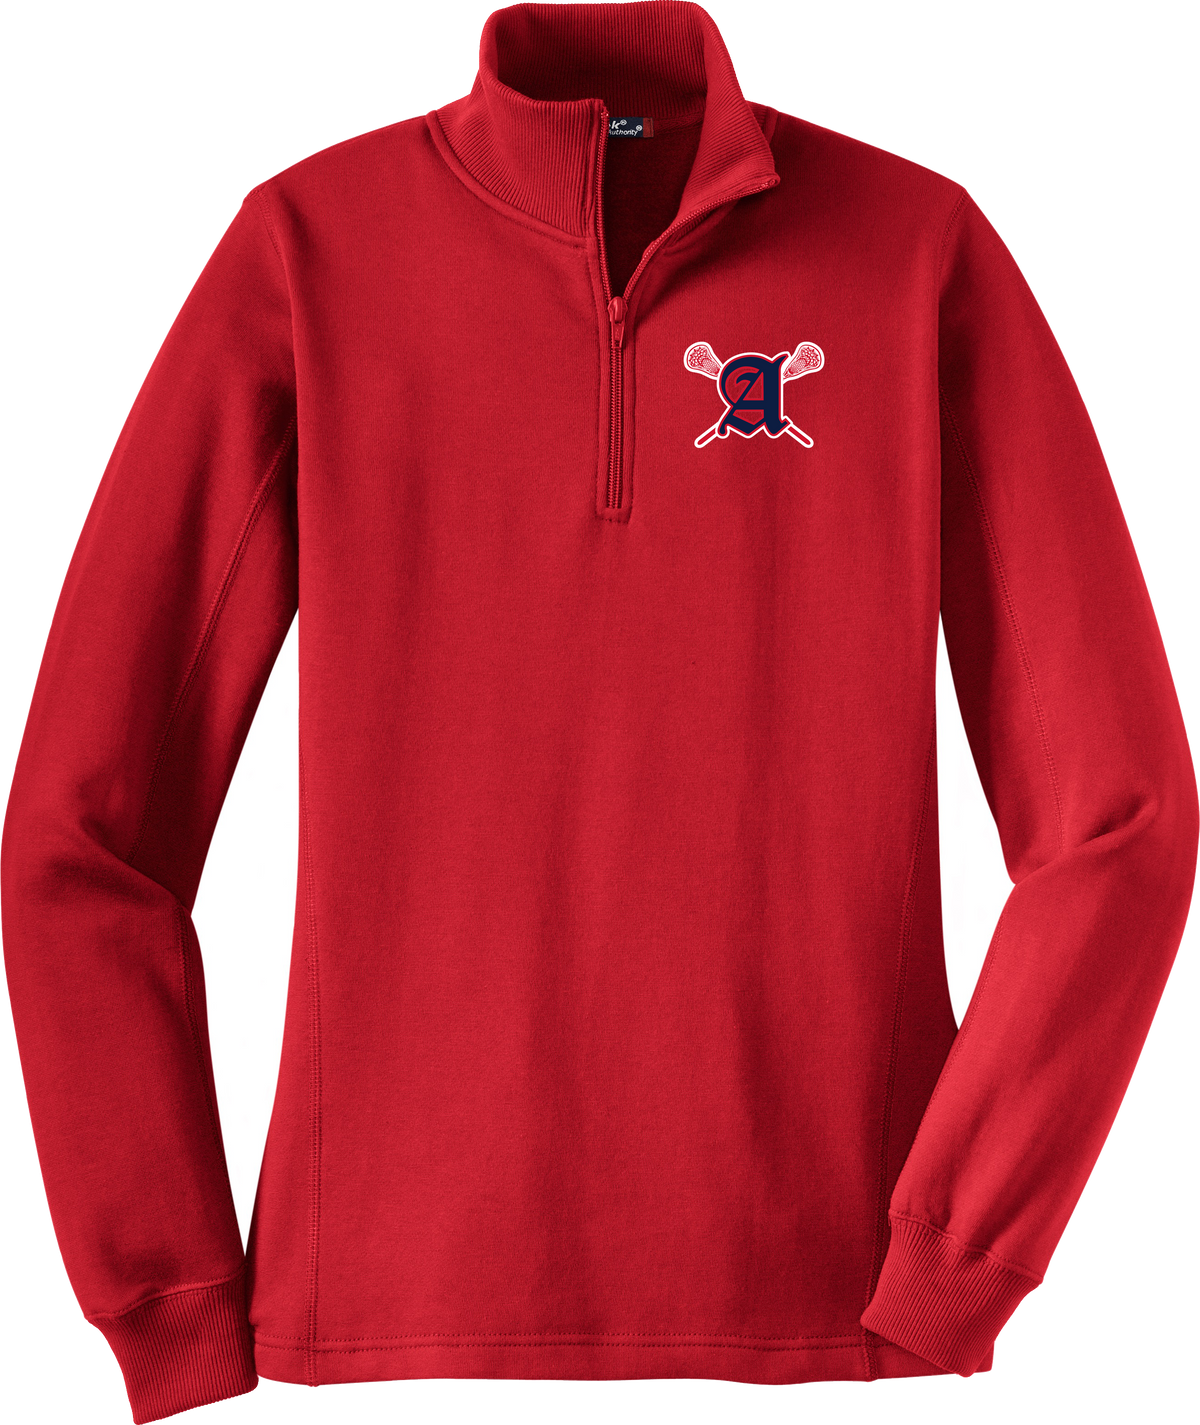 Augusta Patriots Women's Red 1/4 Zip Fleece